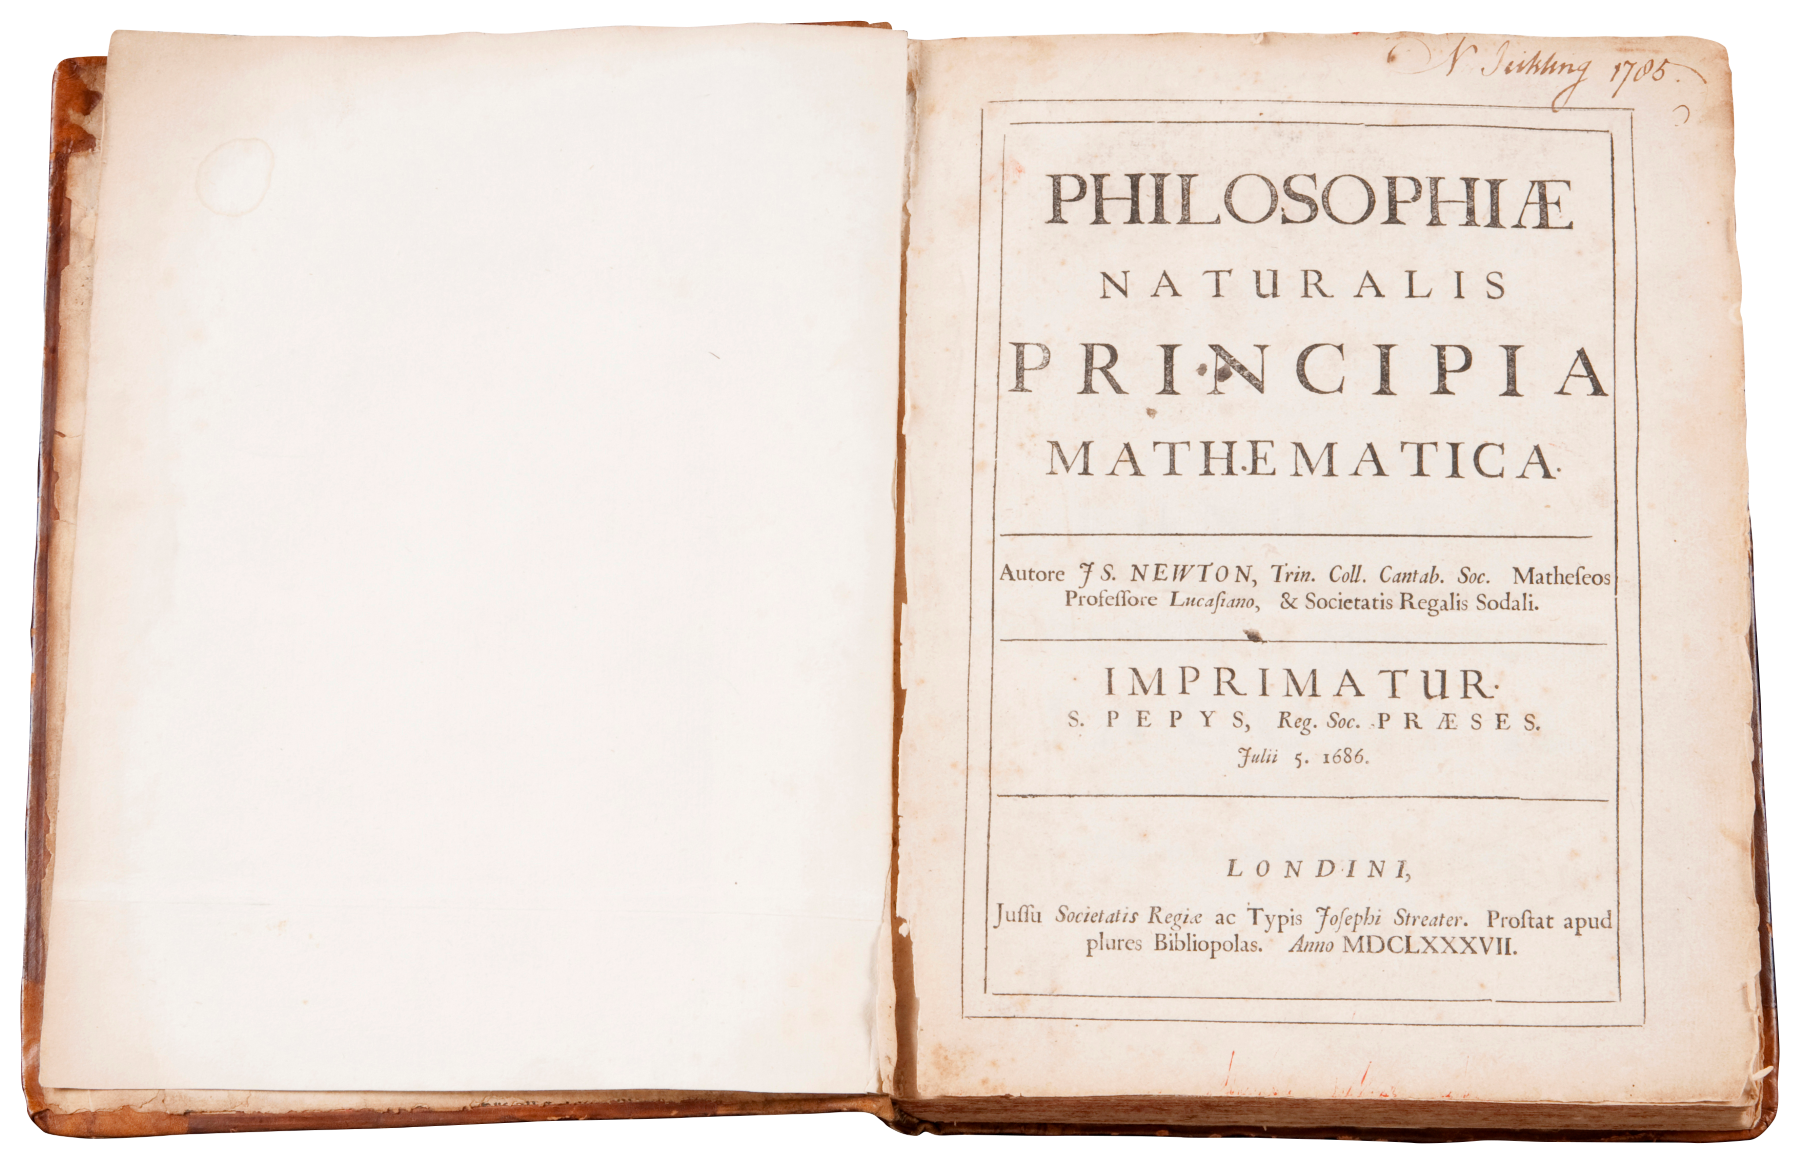 コペルニクス、ガリレイ、ニュートン、デカルト、アインシュタインなど世界を一変させた発見や科学技術の初版本およそ140冊が一堂に特別展示「手稿の中の宇宙 レオナルド・ダ・ヴィンチを旅する」も同時開催